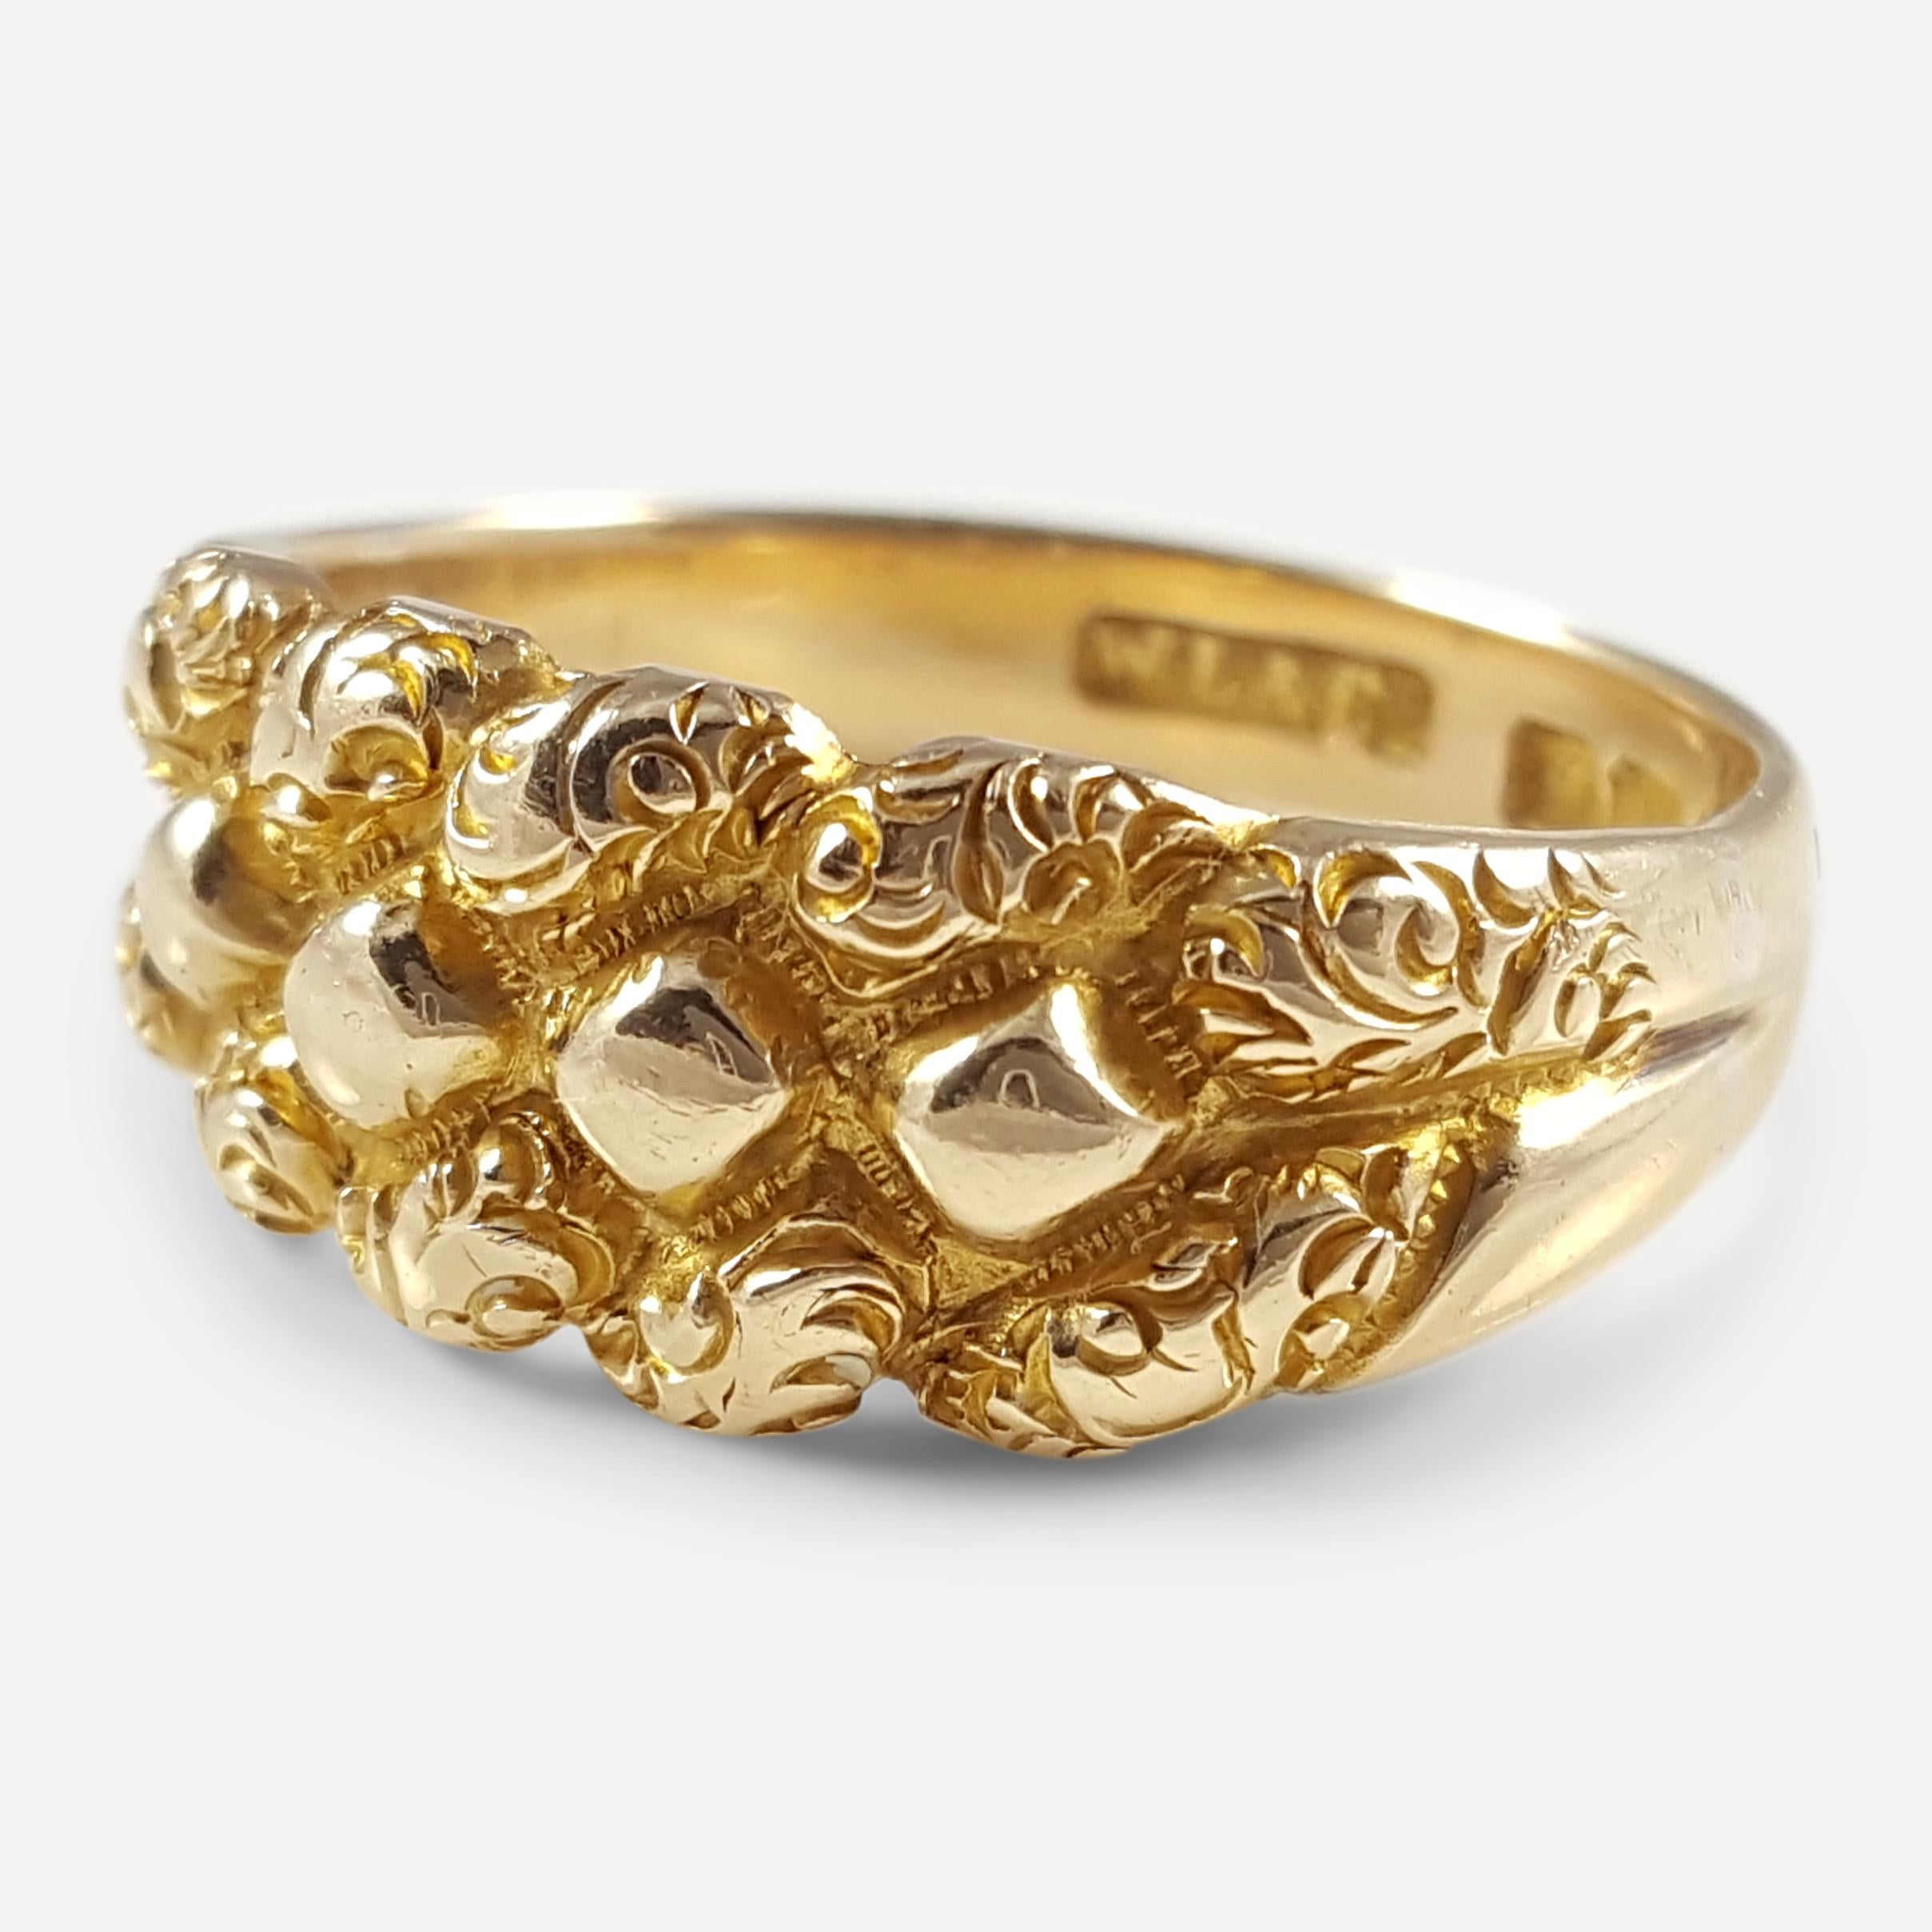 Edwardian 18 Karat Yellow Gold Engraved Keeper Ring Birmingham 1903 3